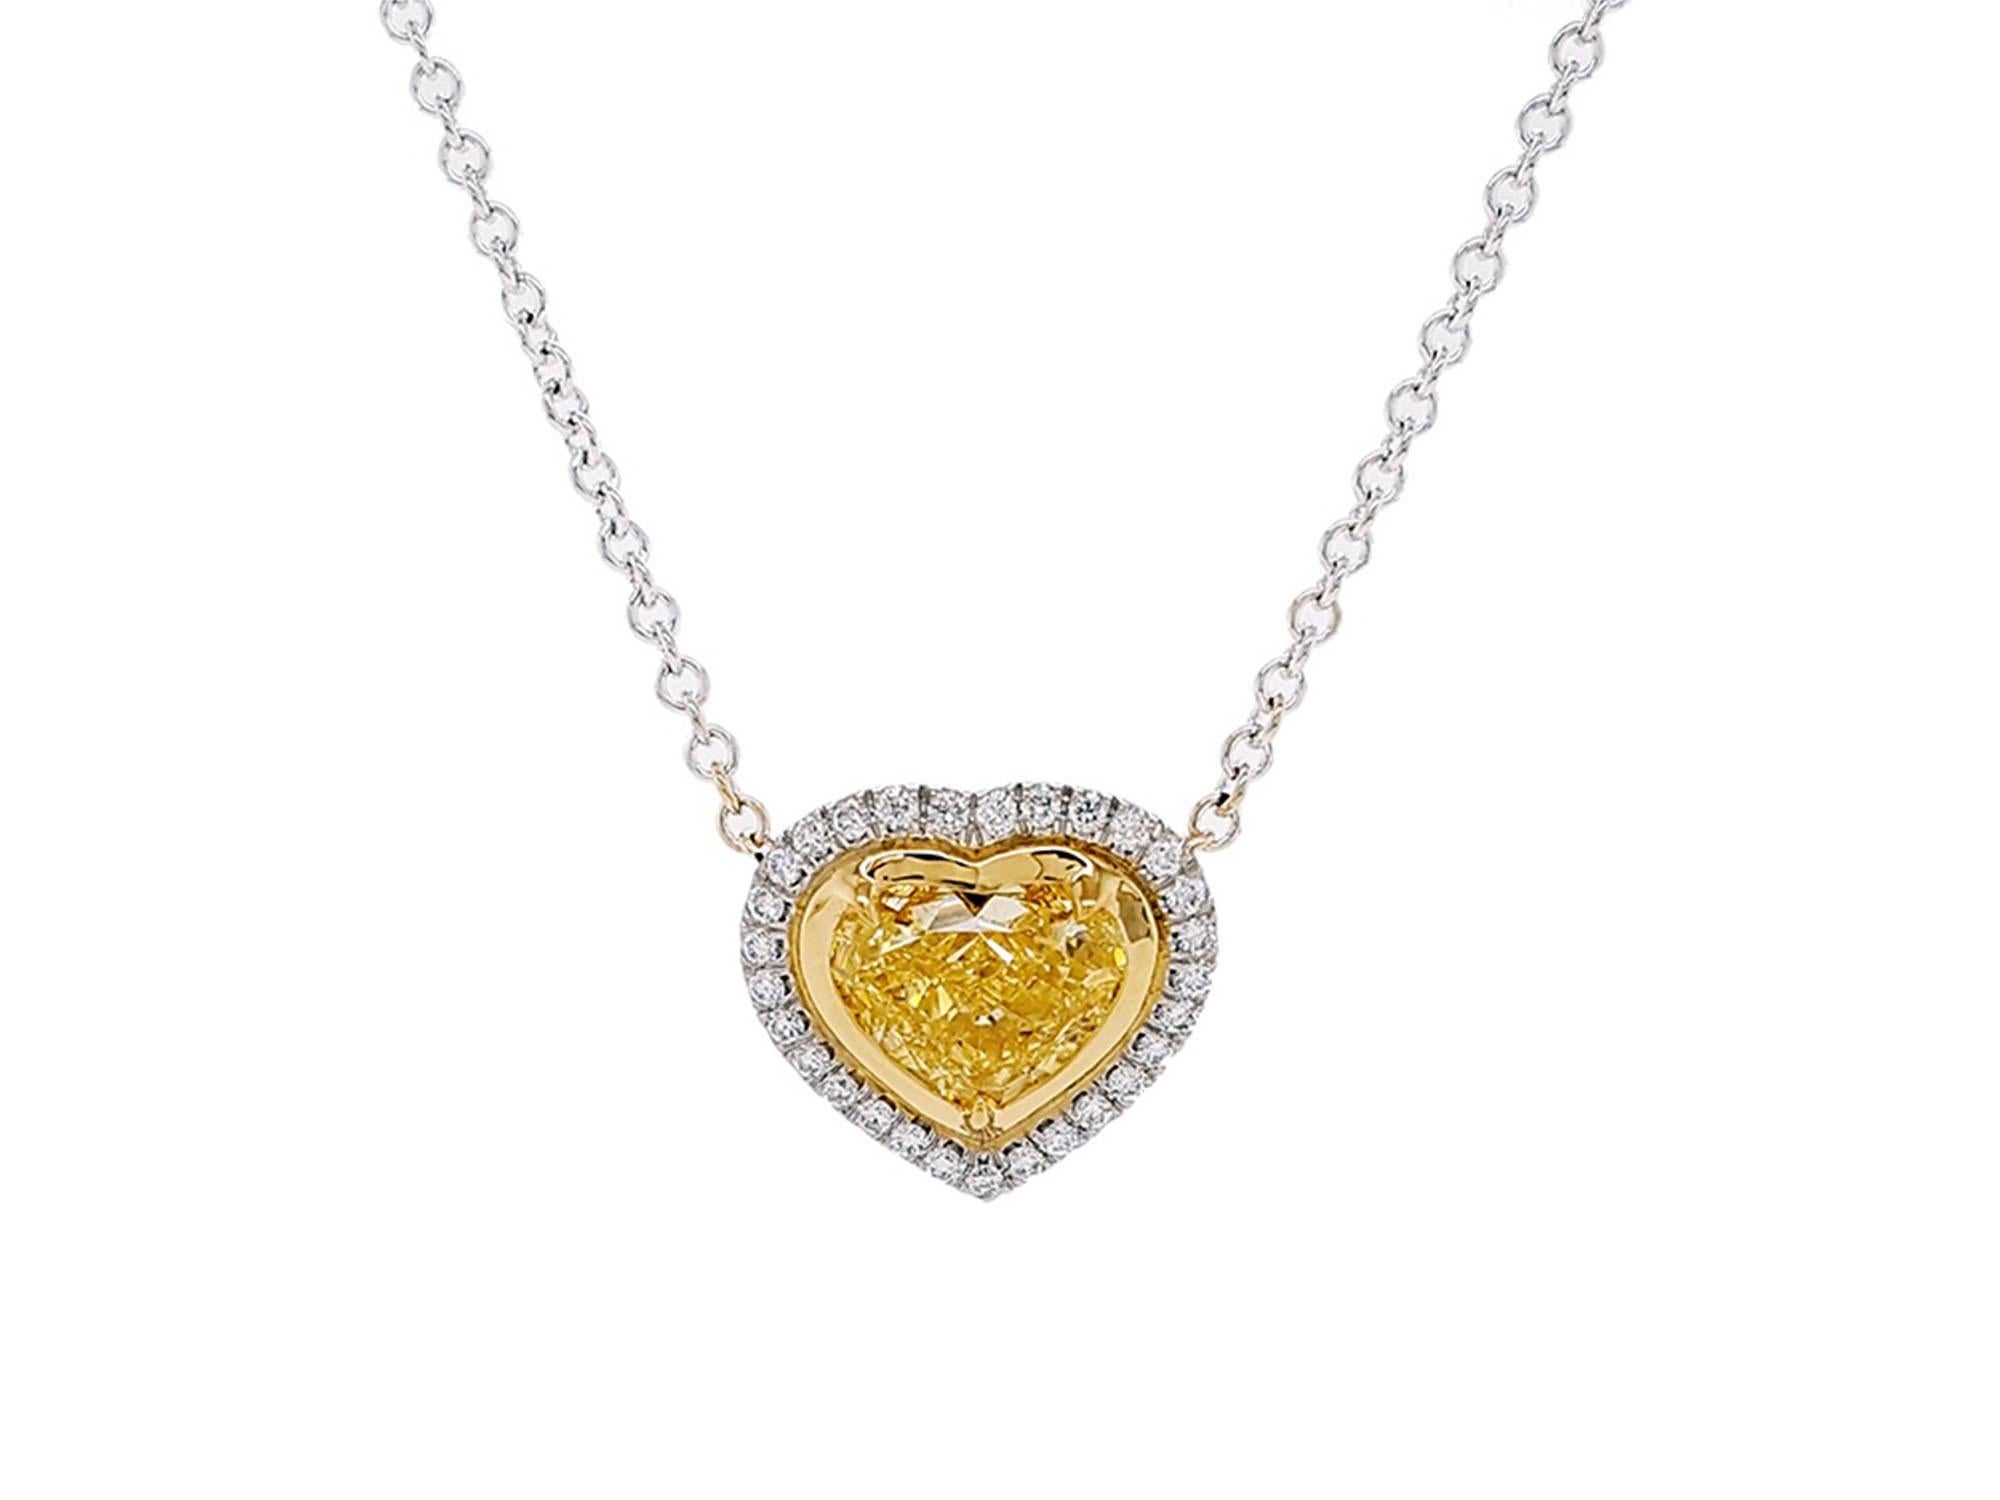 Ce collier pendentif halo à couper le souffle est orné d'un diamant jaune intense en forme de cœur de 2,01 carats, certifié par le GIA (pureté VS2). Ce design intemporel souligne l'élégance de la pierre centrale, complétée par 29 diamants ronds